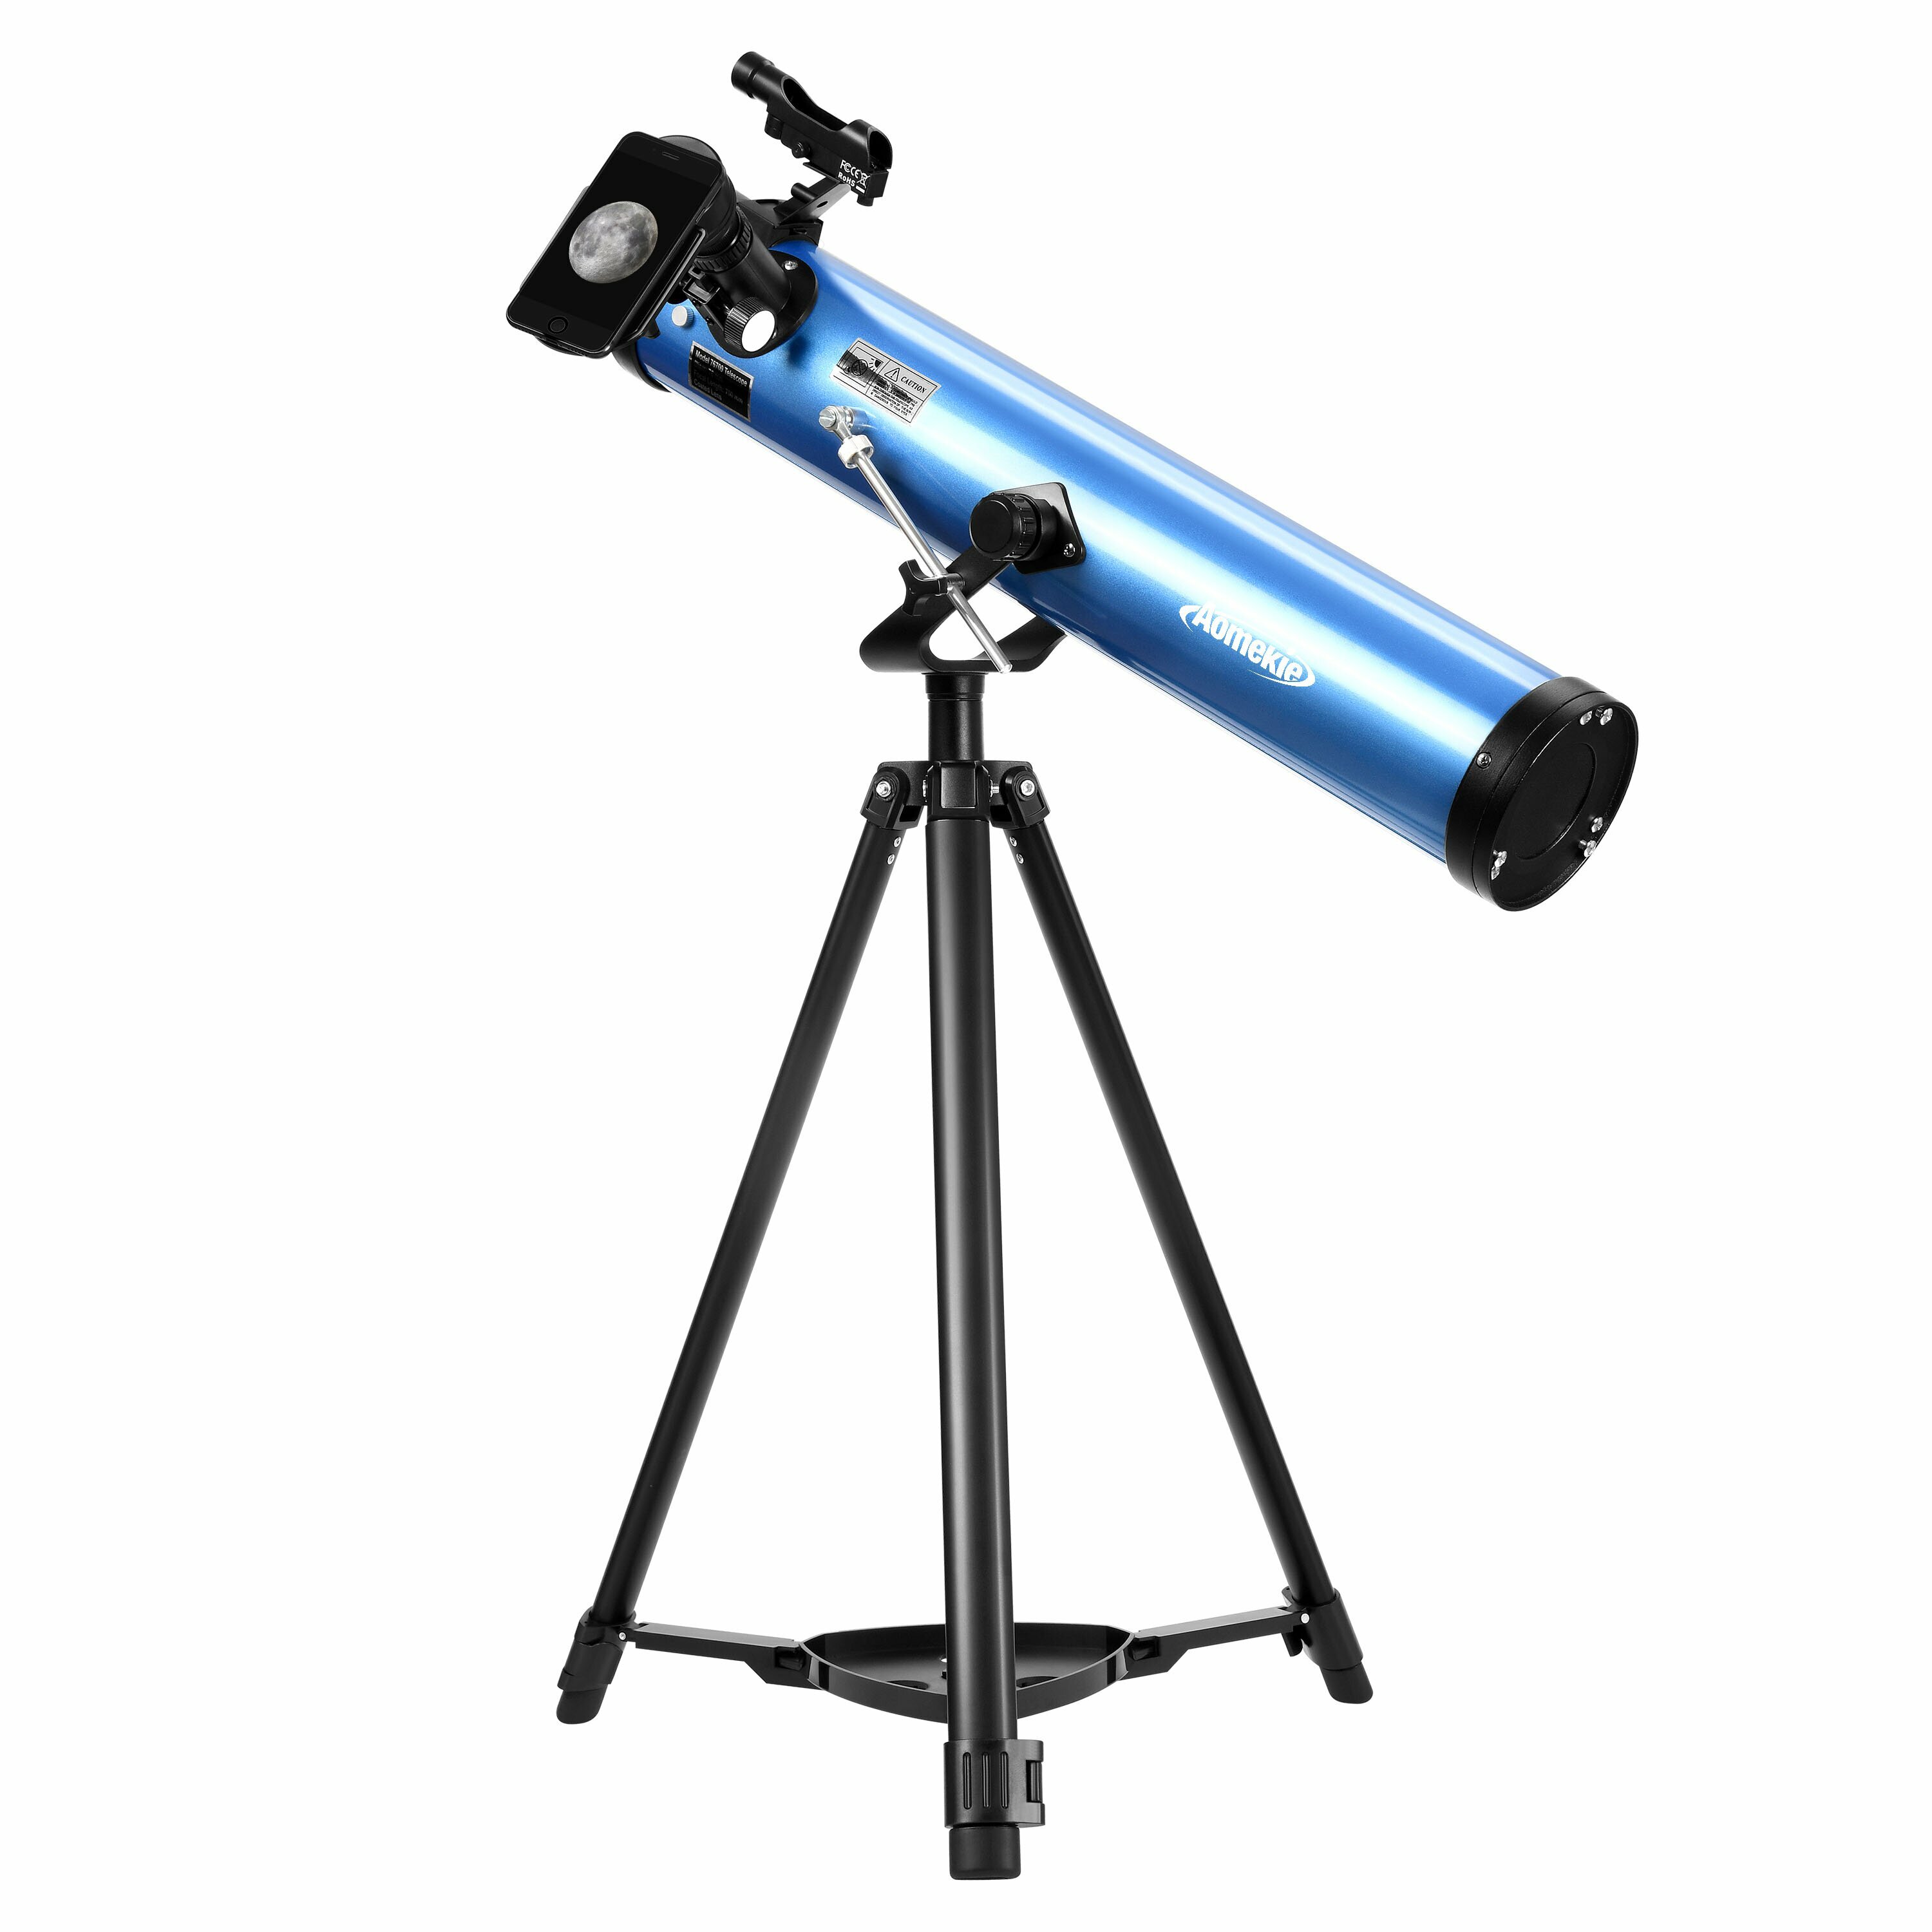 [EU Direct] AOMEKIE Reflektor Teleskope für erwachsene Anfänger in Astronomie 76mm/700mm mit Telefonadapter, Bluetooth Controller, Stativ, Sucherfernrohr und Mondfilter A02018